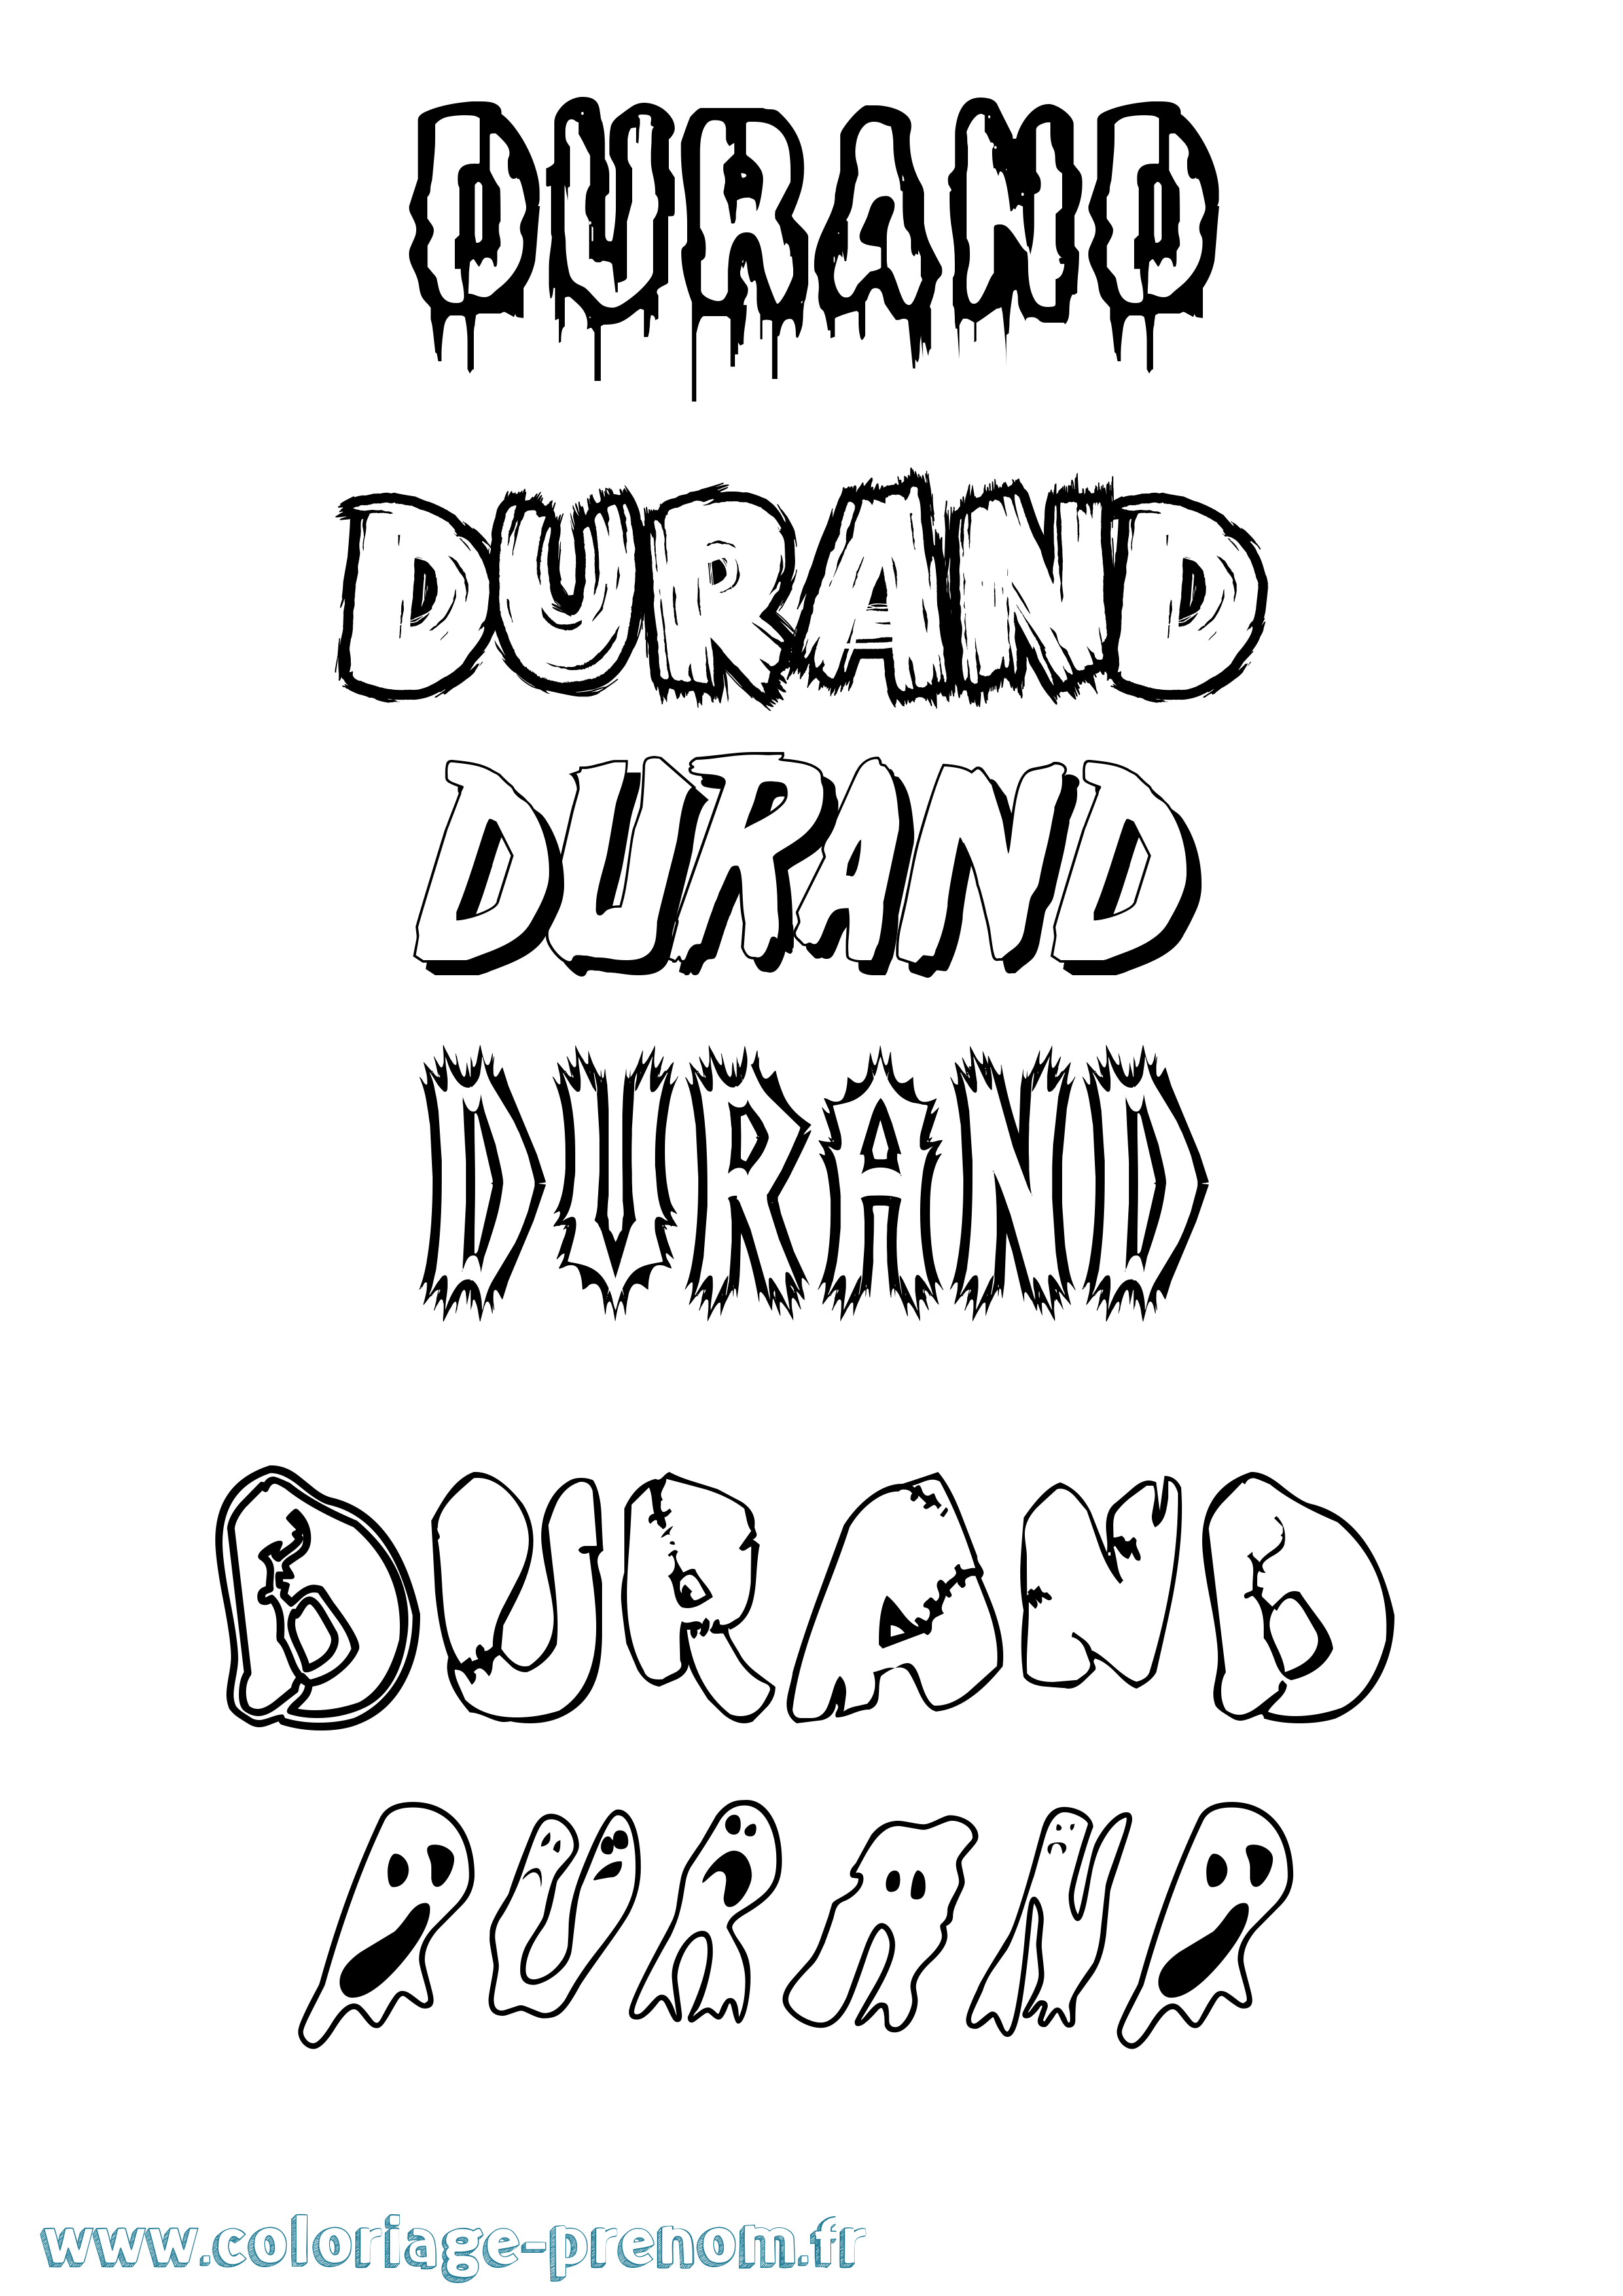 Coloriage prénom Durand Frisson